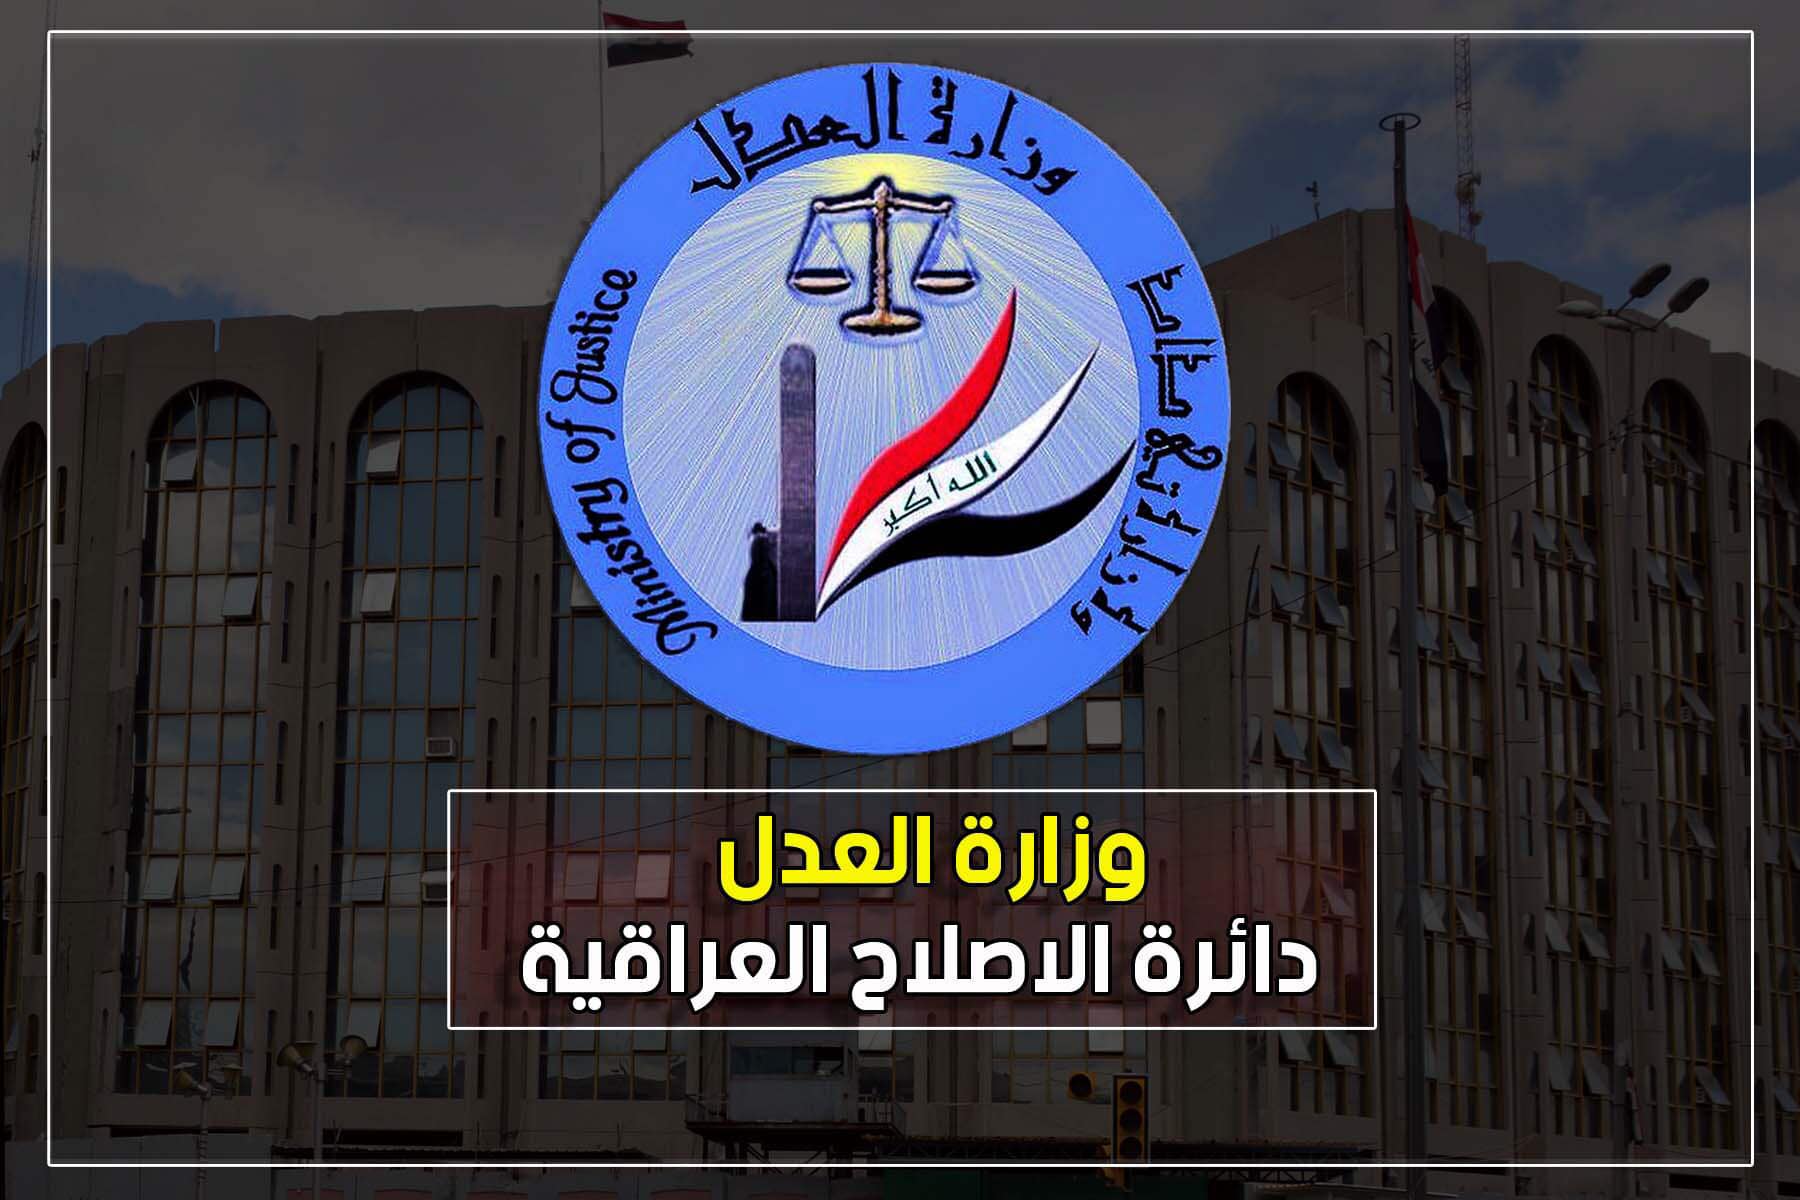 دائرة الإصلاح العراقية تعلن عن الموقف الشهري لأعداد المطلق سراحهم في اقسامها خلال شهر تشرين الأول للعام الجاري